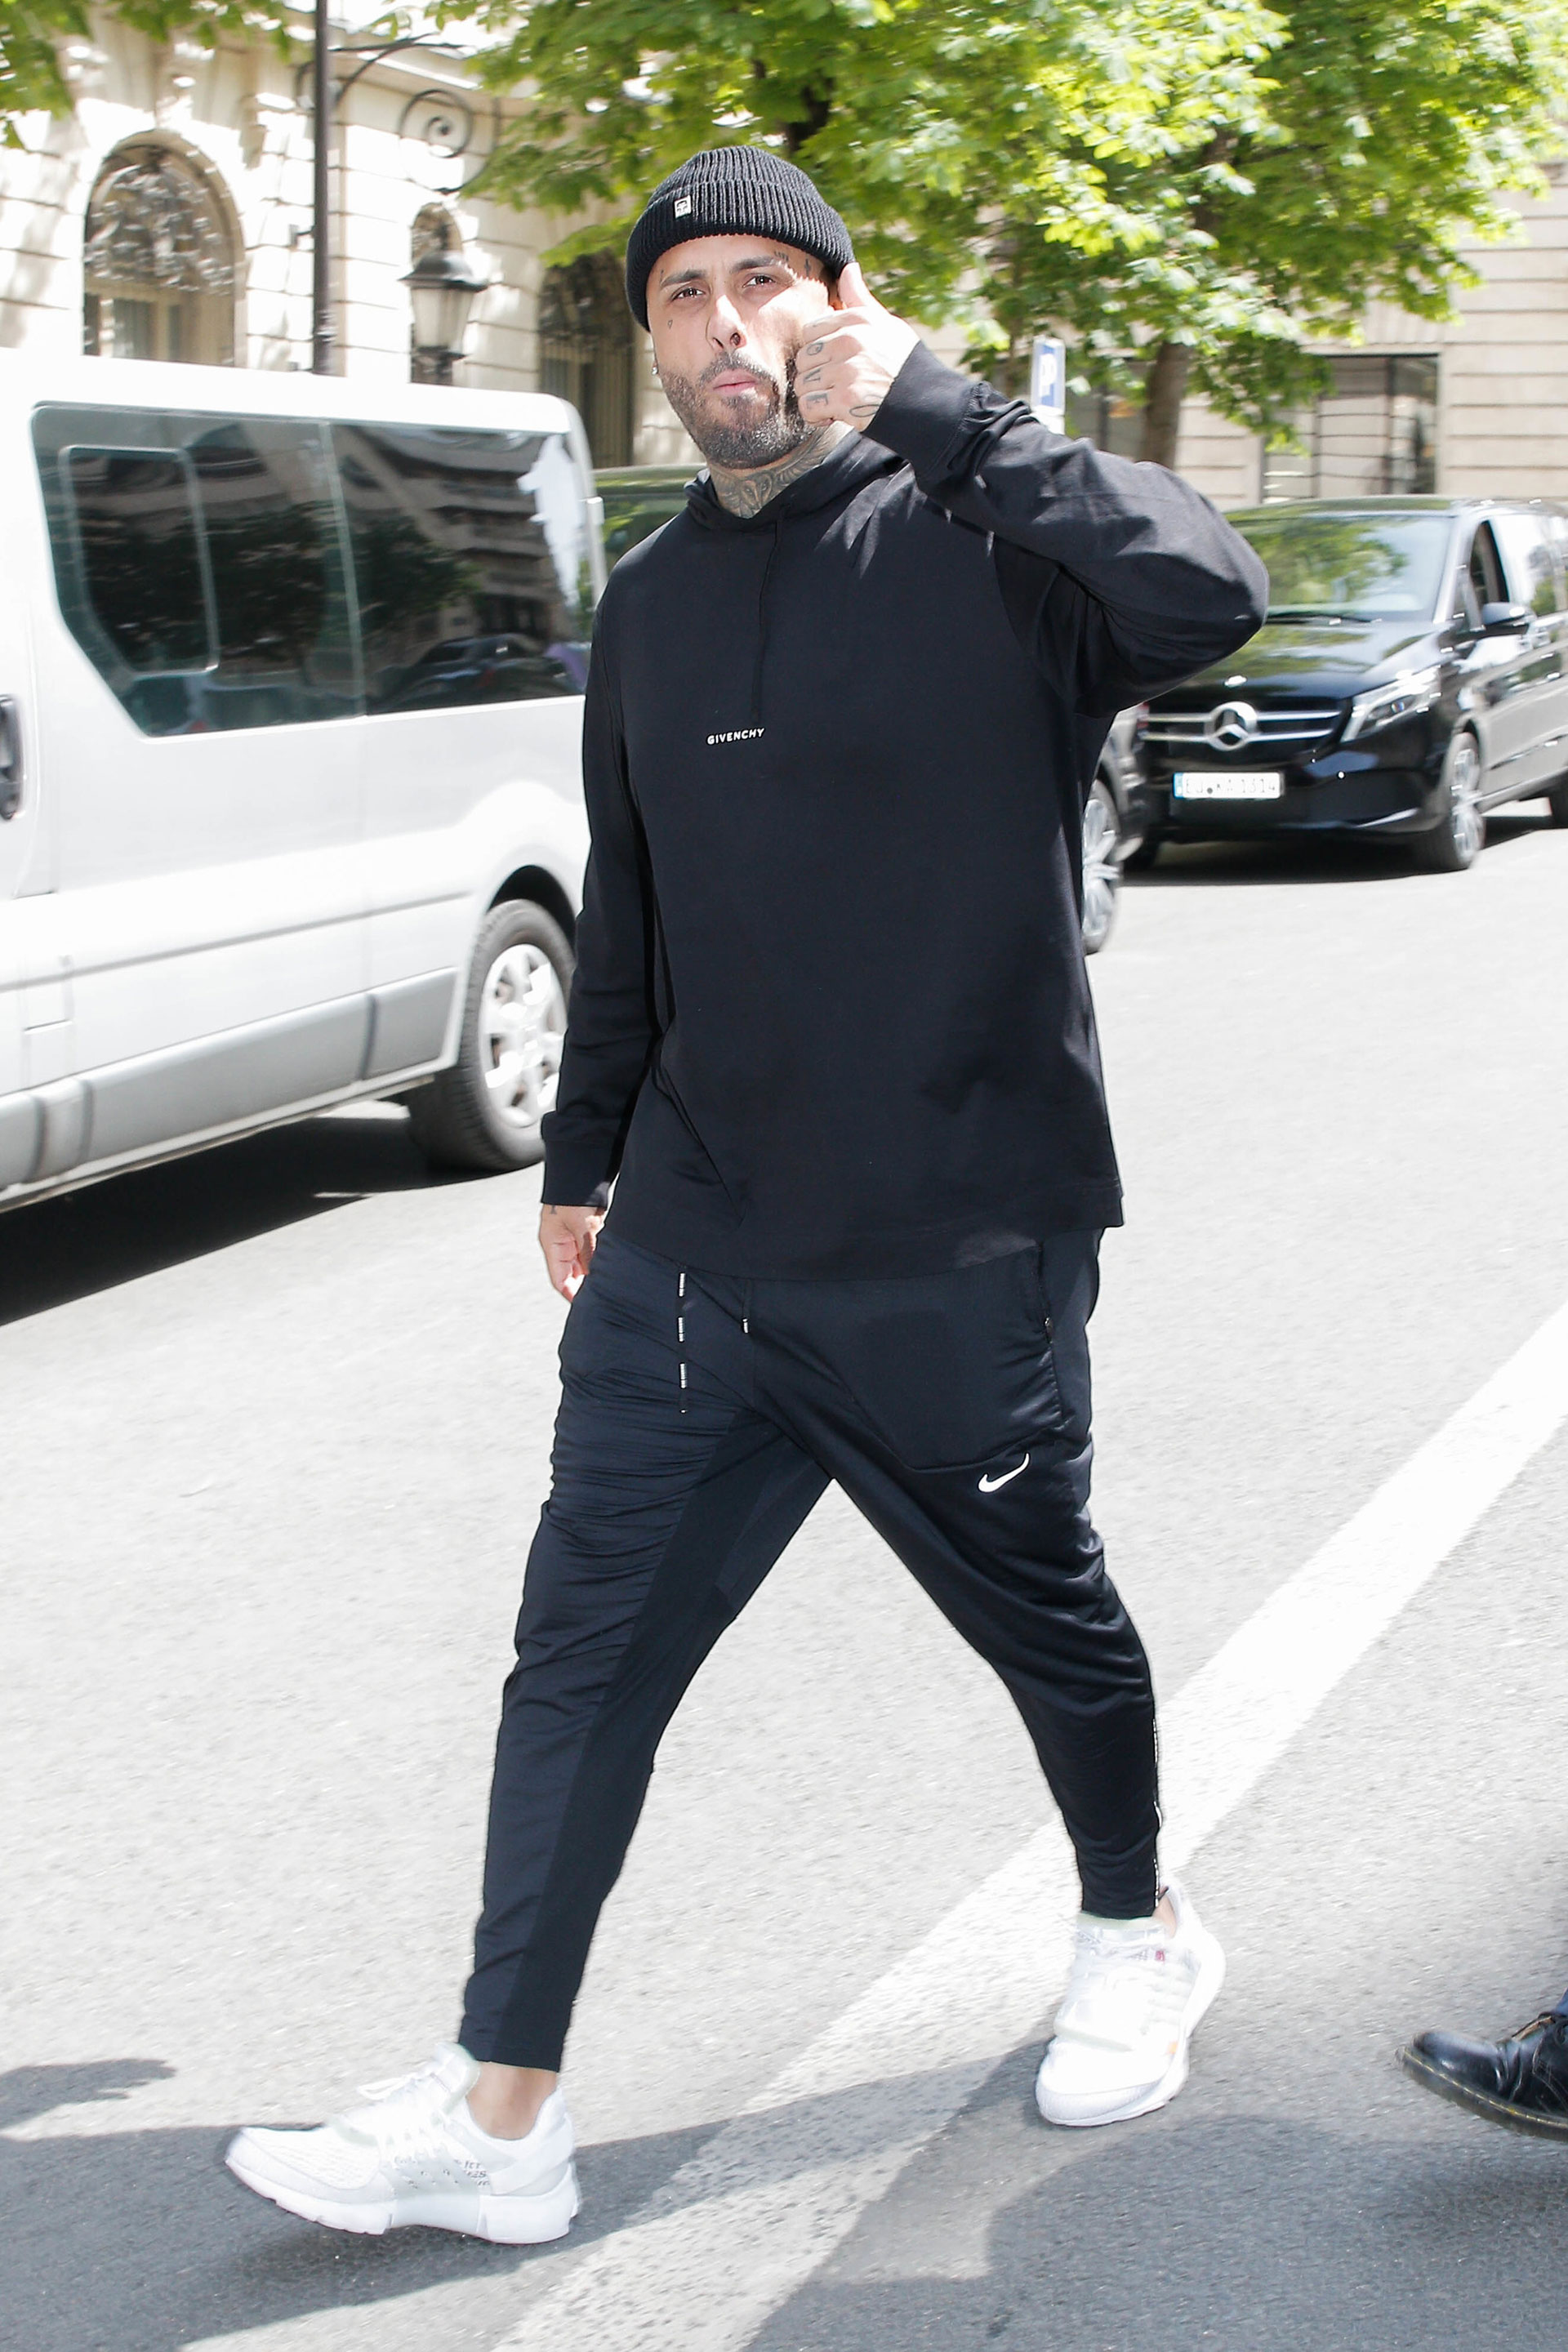 Nicky Jam fue fotografiado mientras daba un paseo por las calles de París, en donde se hospeda luego de haber brindado un recital al que fueron varios famosos como Wanda Nara y Mauro Icardi. El cantante lució un look total black de pantalón, buzo y gorro de lana